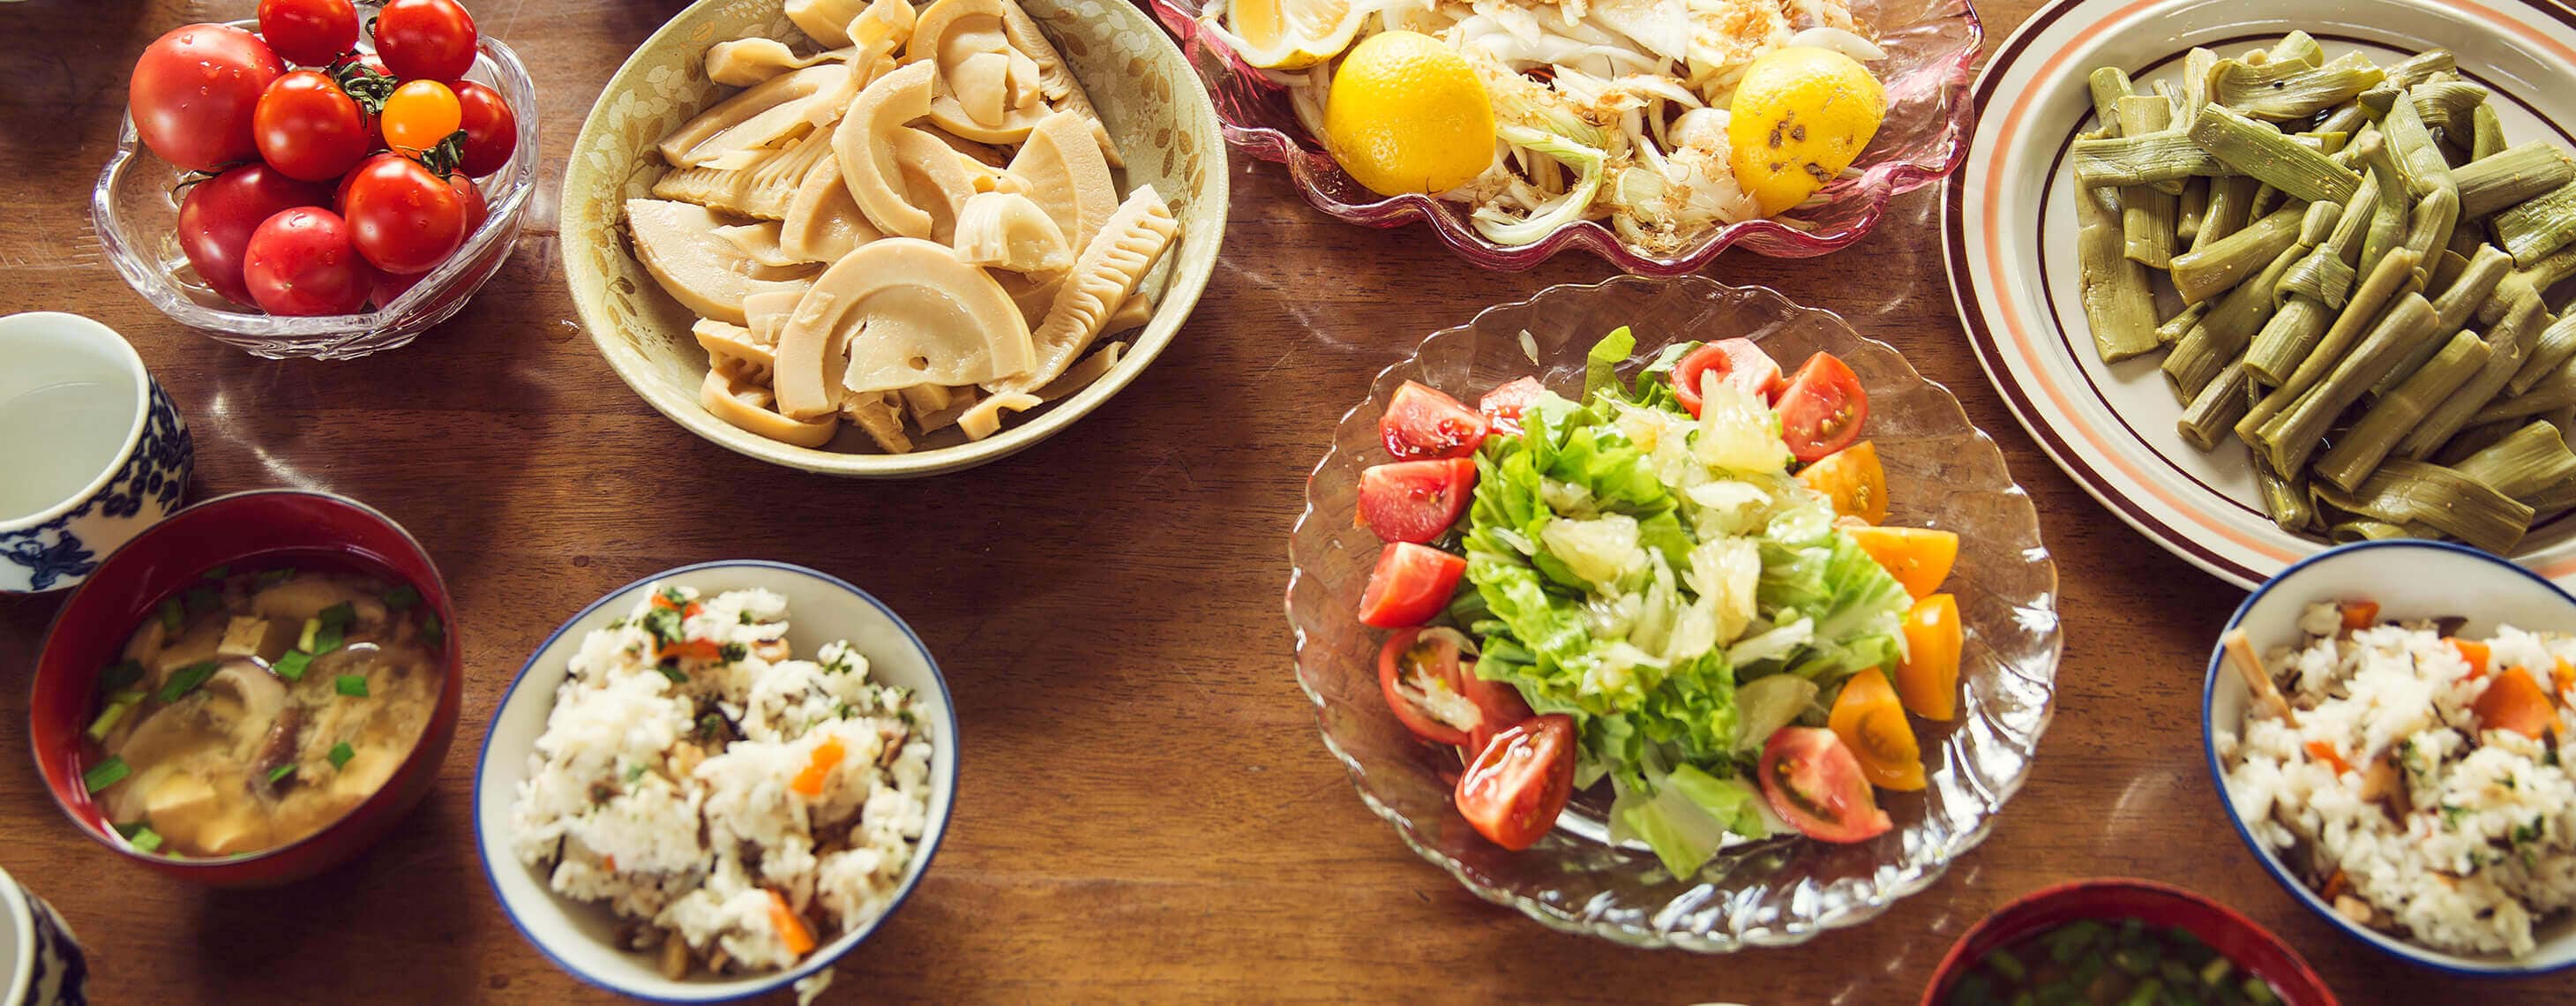 イタドリ、タケノコ、文旦のサラダ、シイタケのお味噌汁など農家さんの食卓